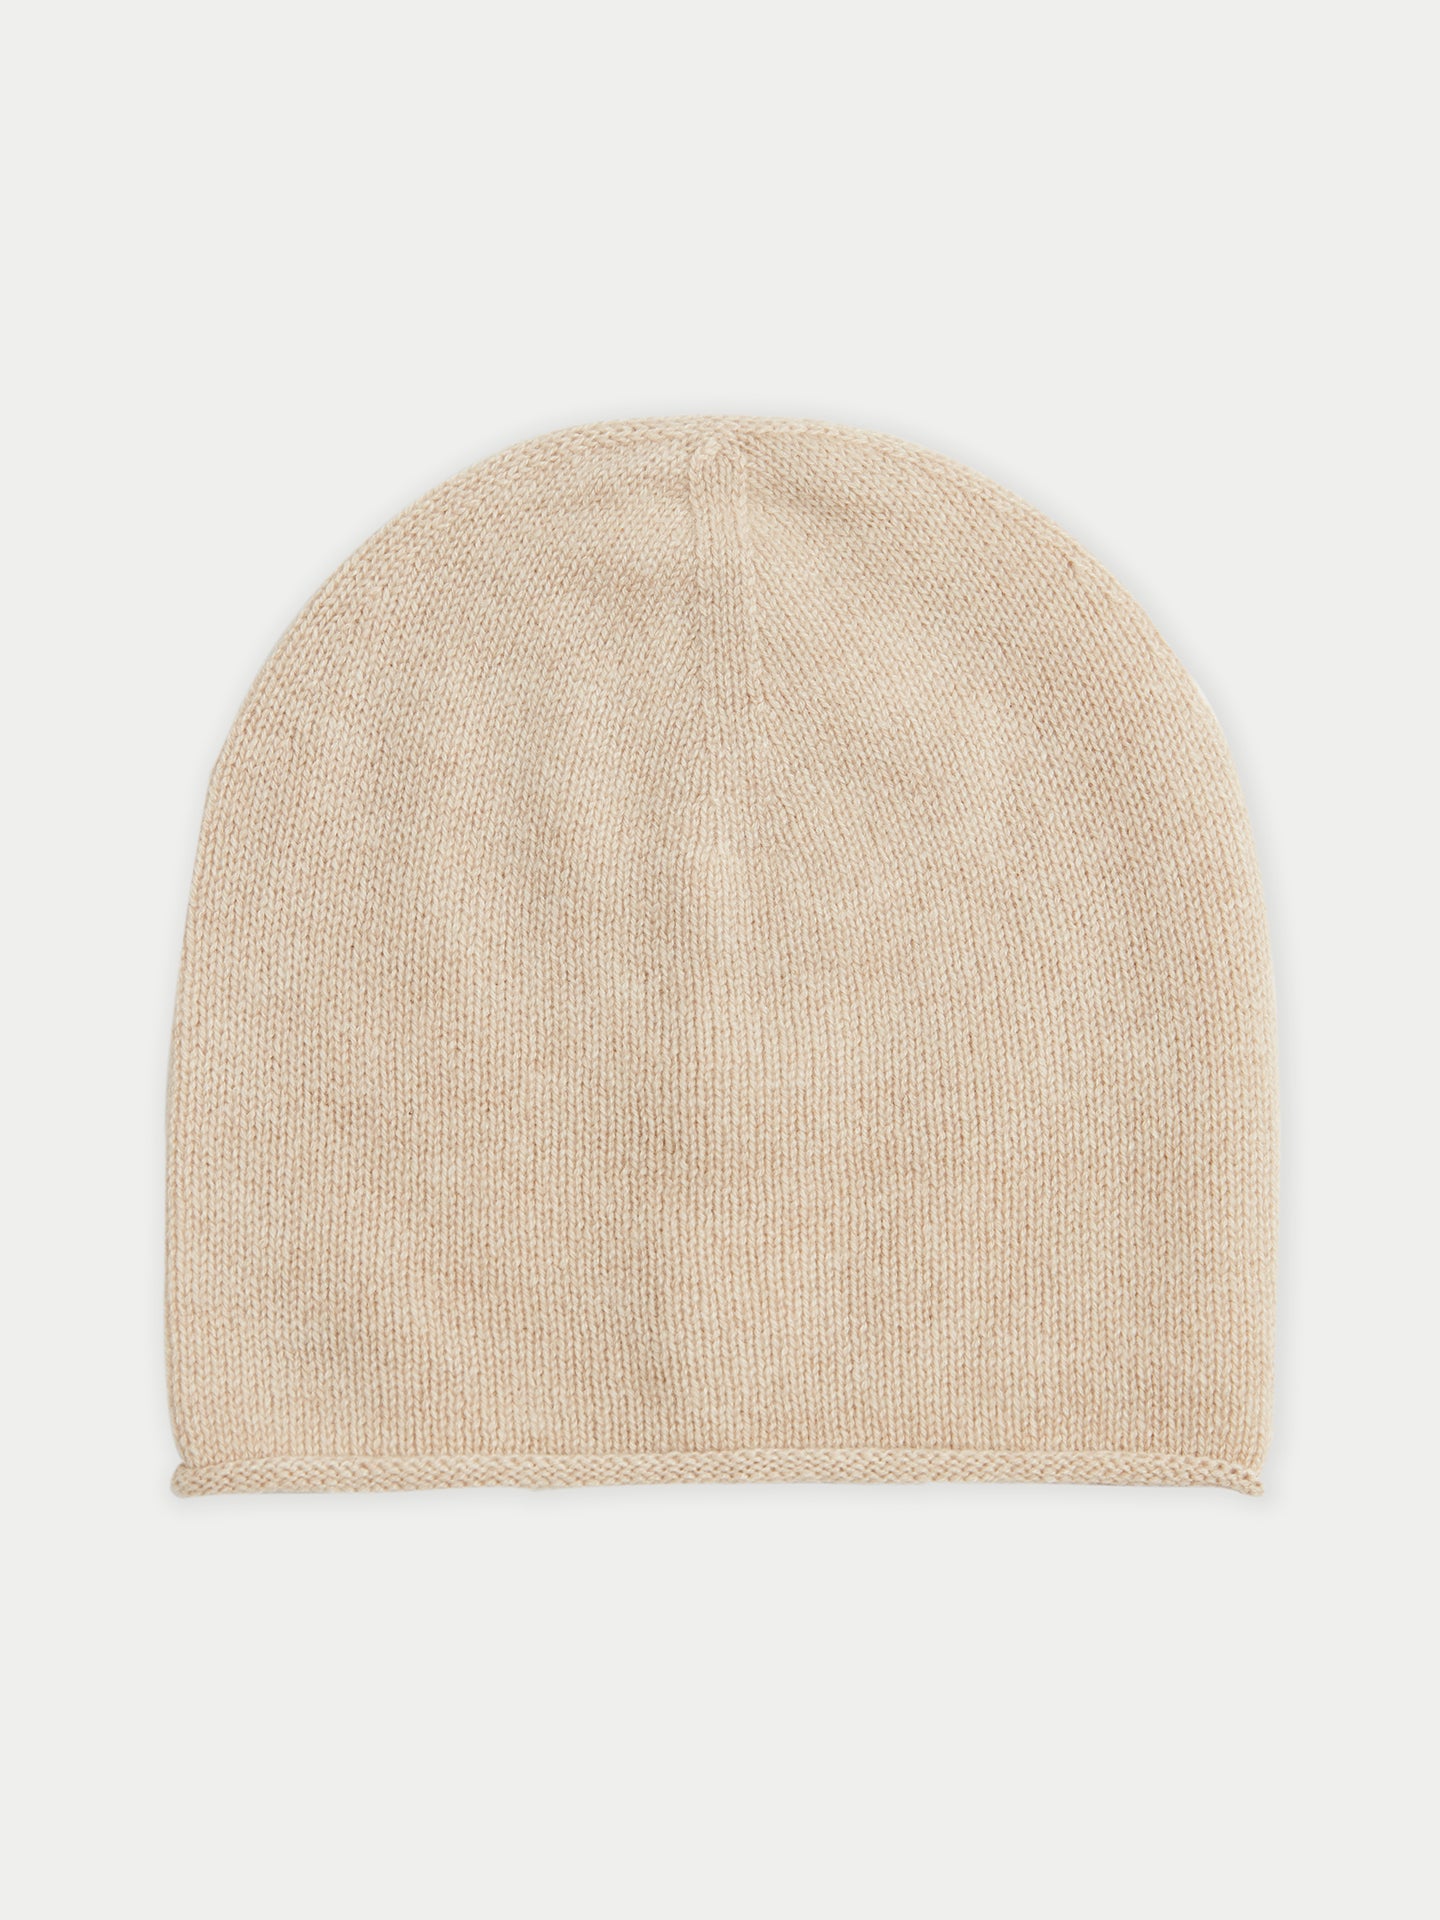 Women's Cashmere $99 Hat & Sweater Set Beige - Gobi Cashmere